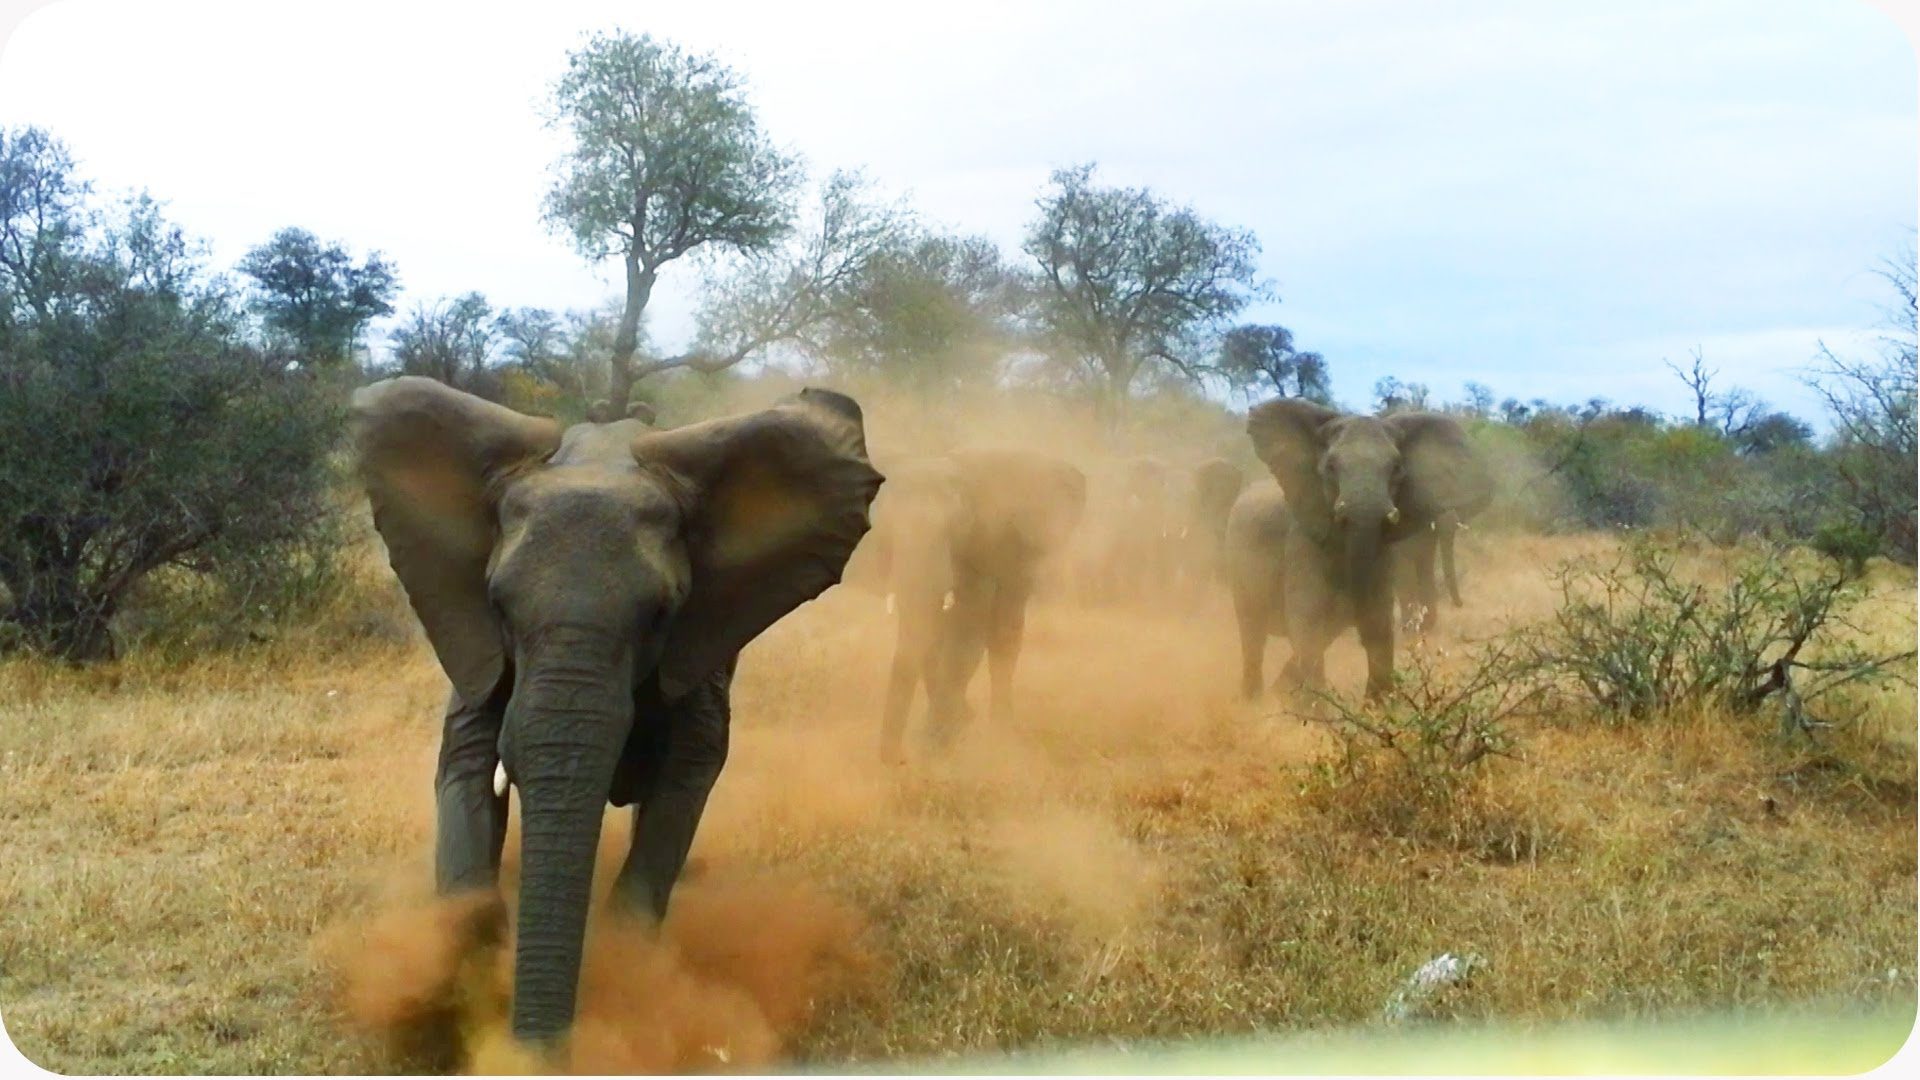 1 južnoafrički radnik poginuo u napadu krda slonova u prirodnom rezervatu